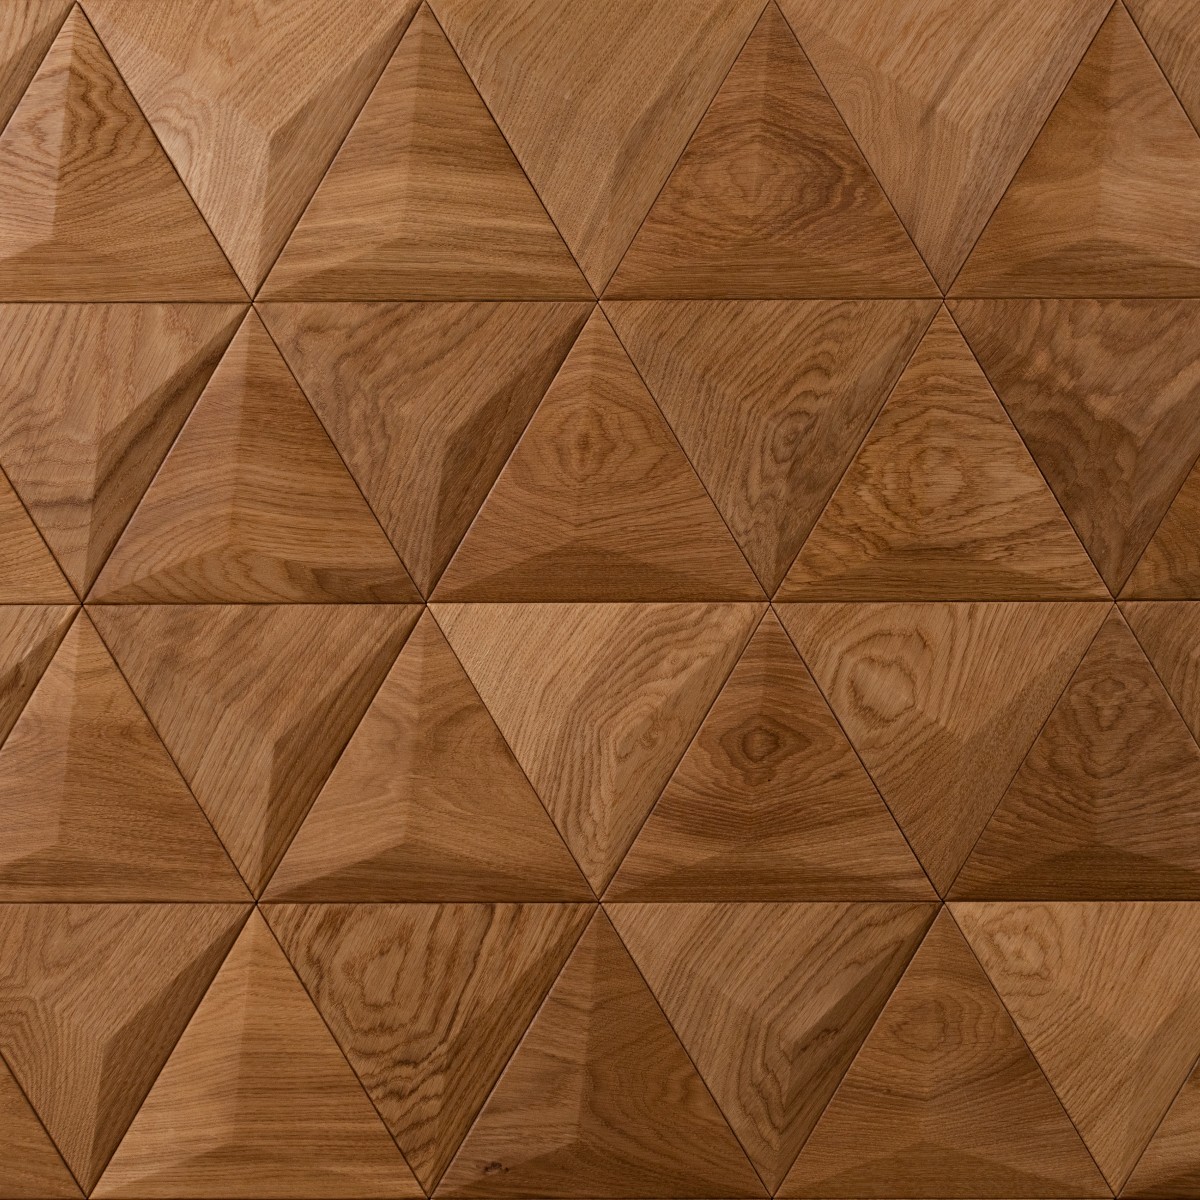 Panouri decorative 3D din lemn de stejar Pyramid, Panouri decorative din lemn 